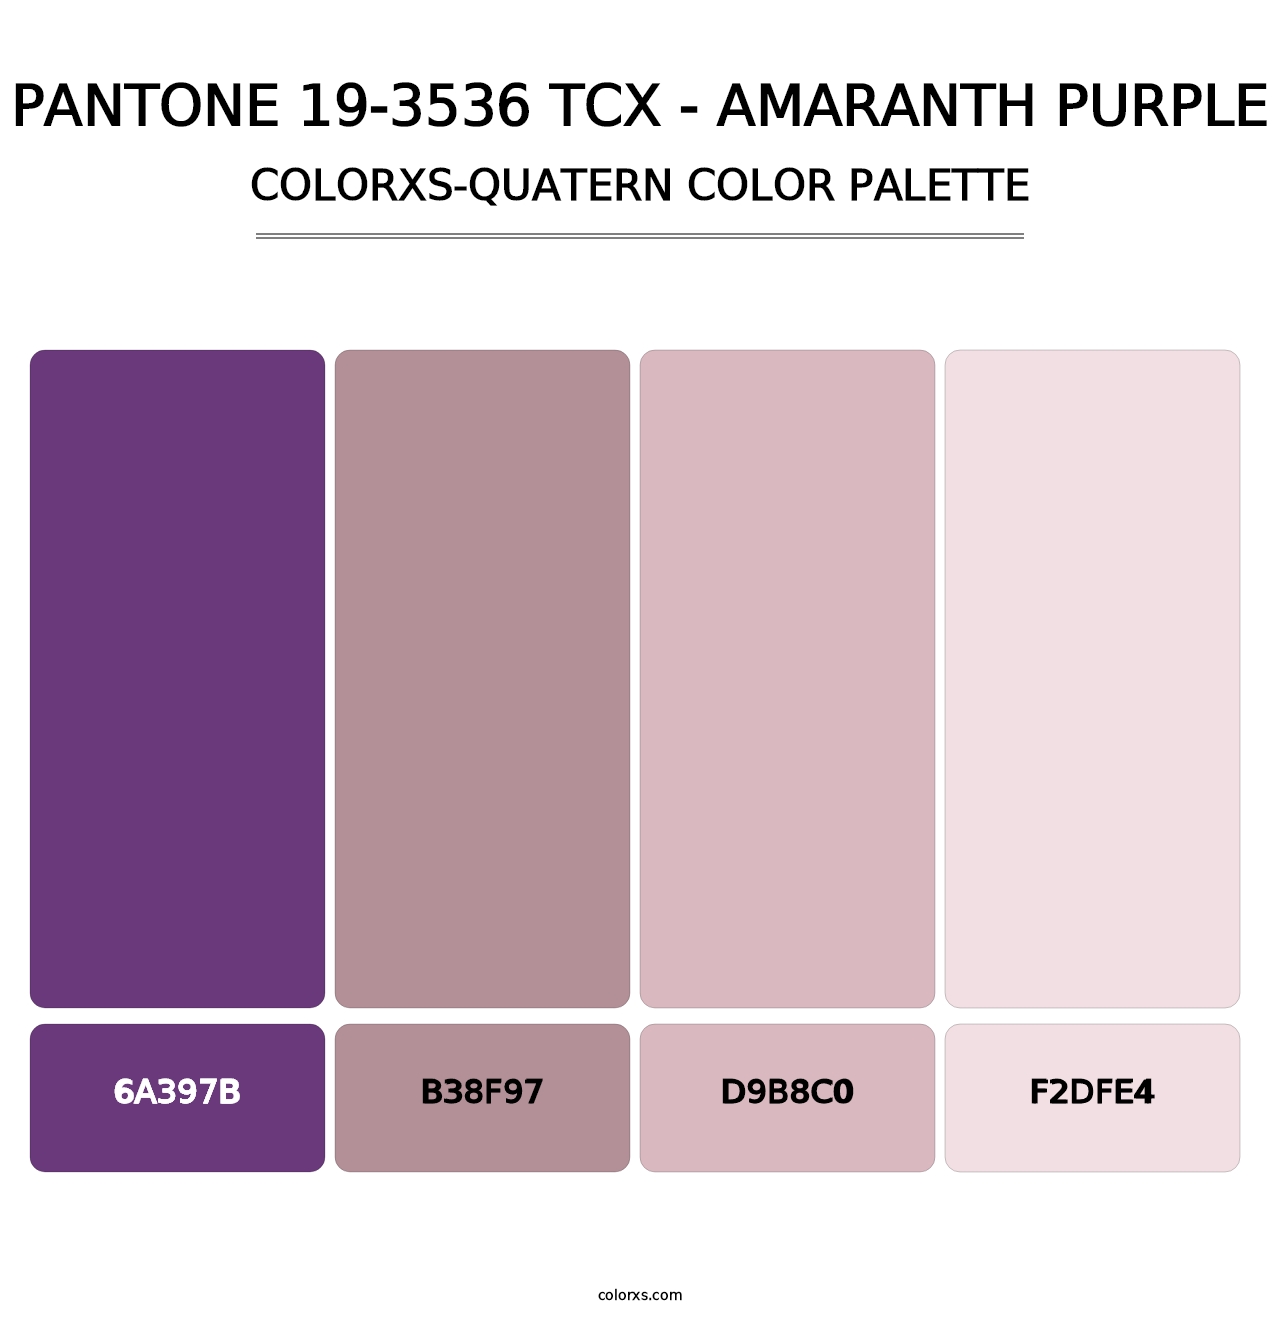 PANTONE 19-3536 TCX - Amaranth Purple - Colorxs Quatern Palette